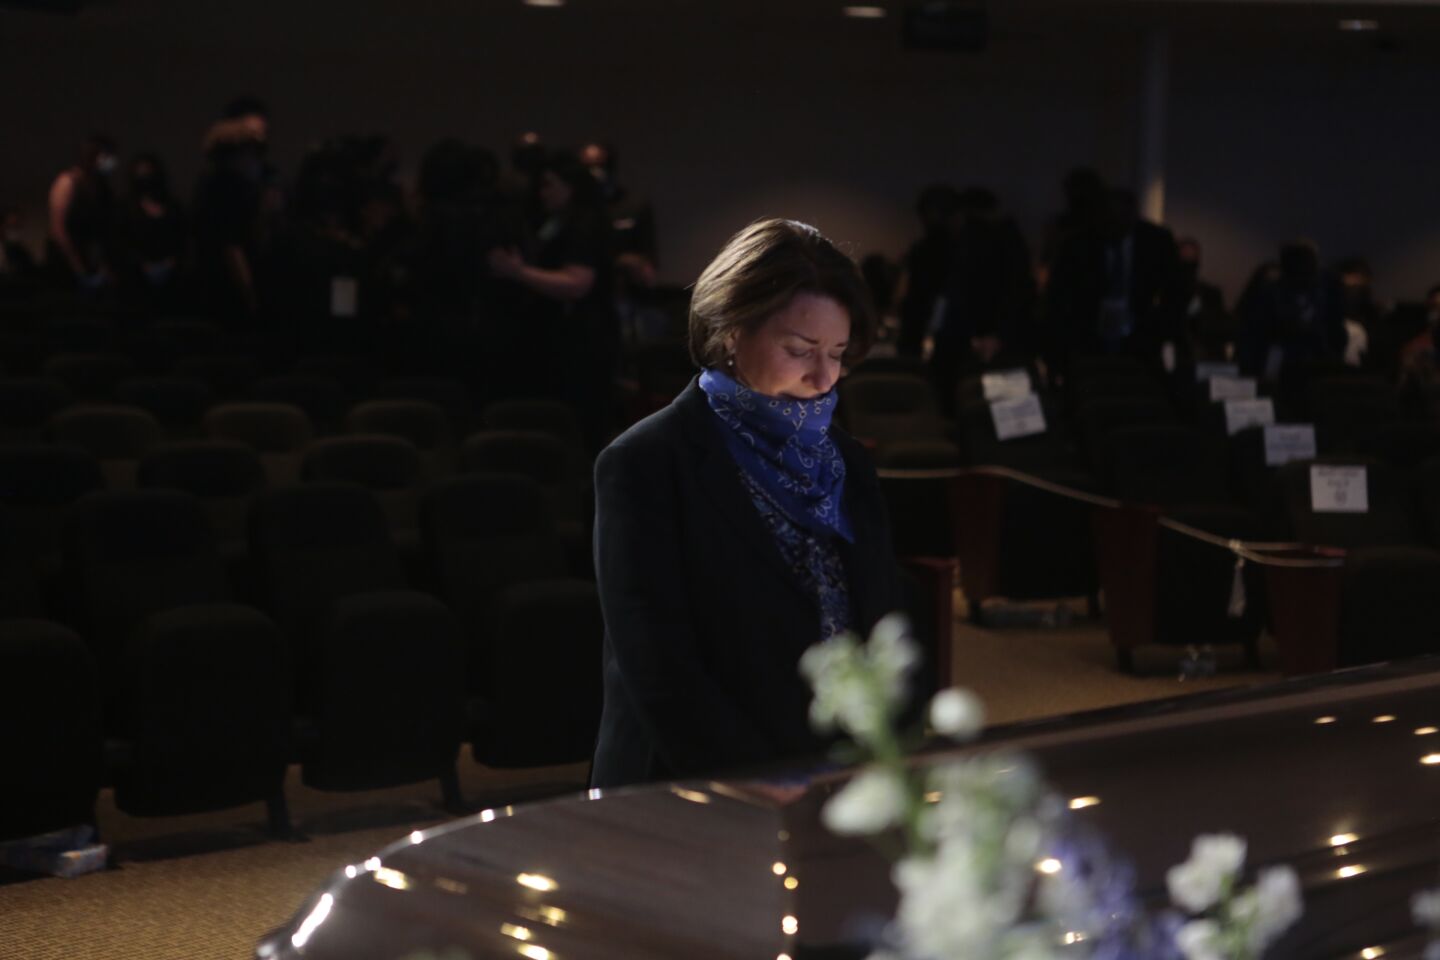 Sen. Amy Klobuchar pauses before George Floyd's casket.